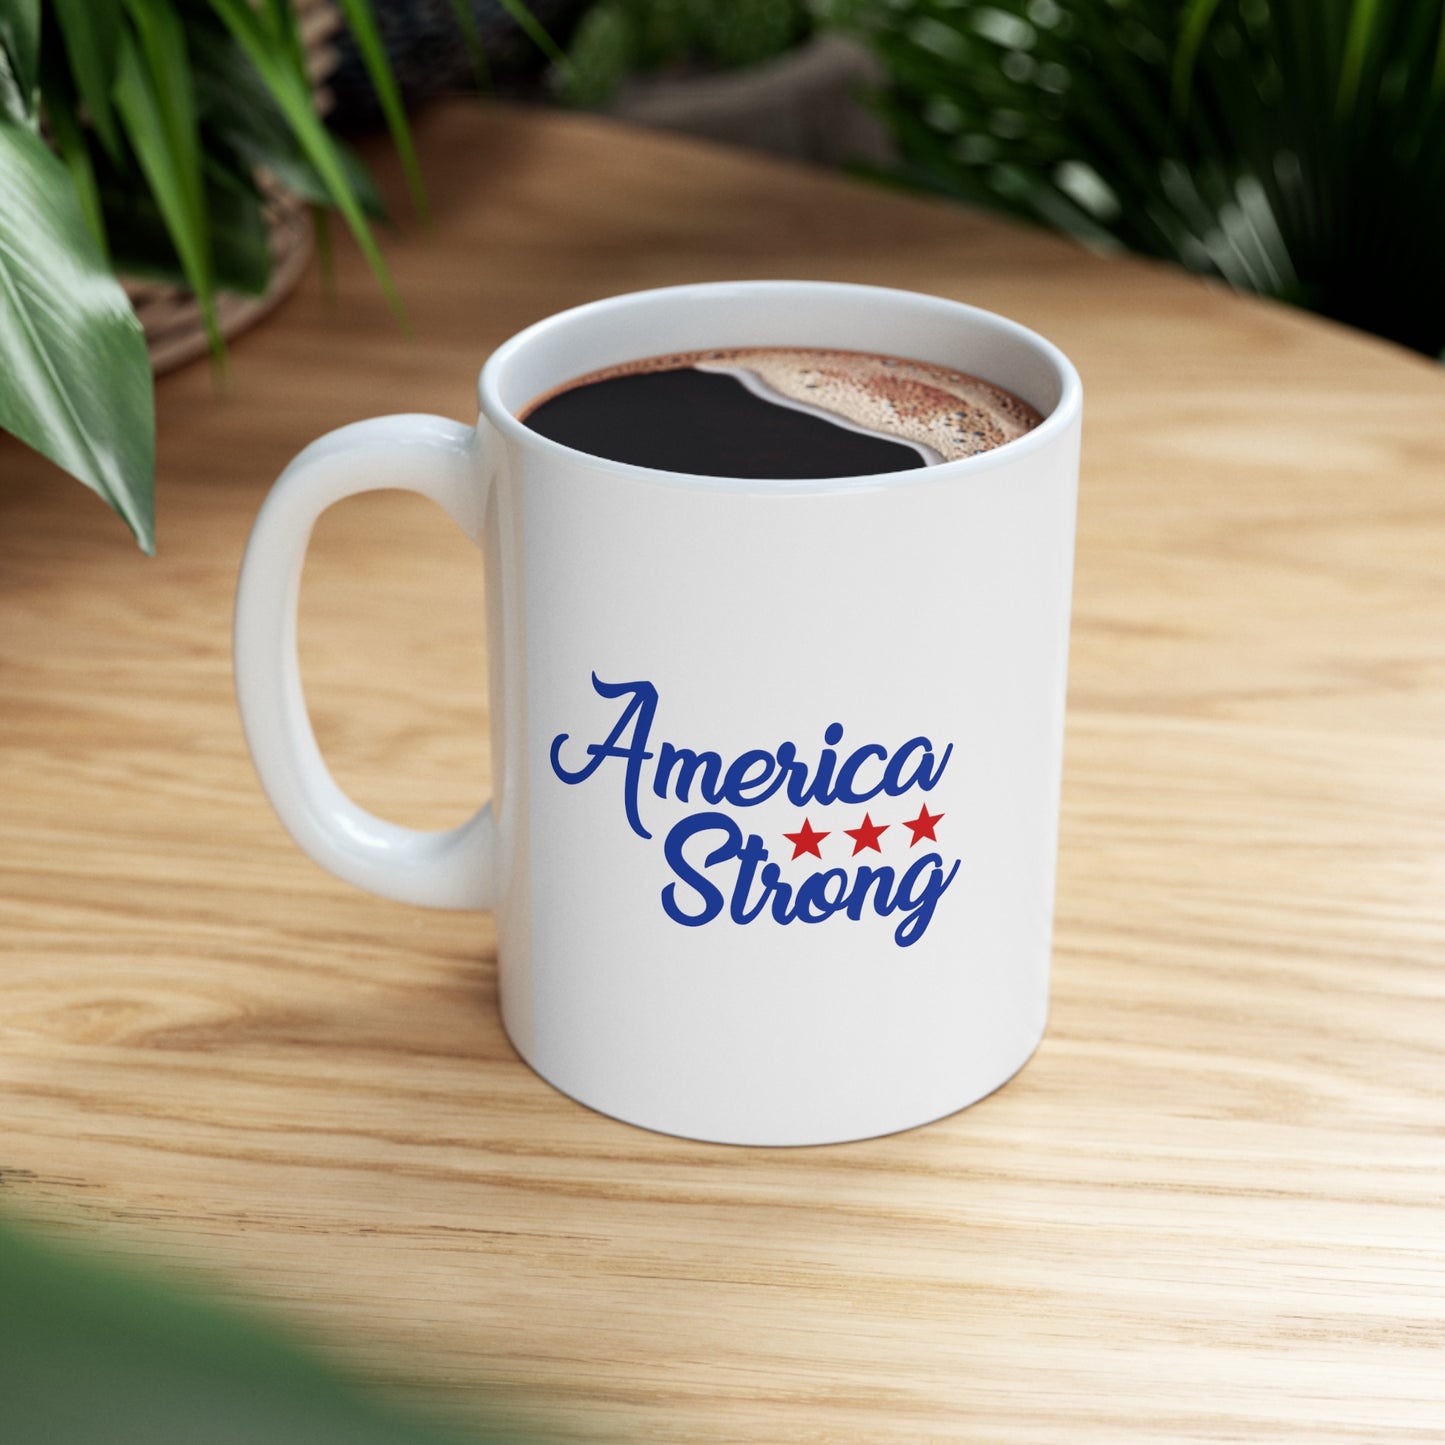 American Strong for the USA Patriot Ceramic Mug 11oz